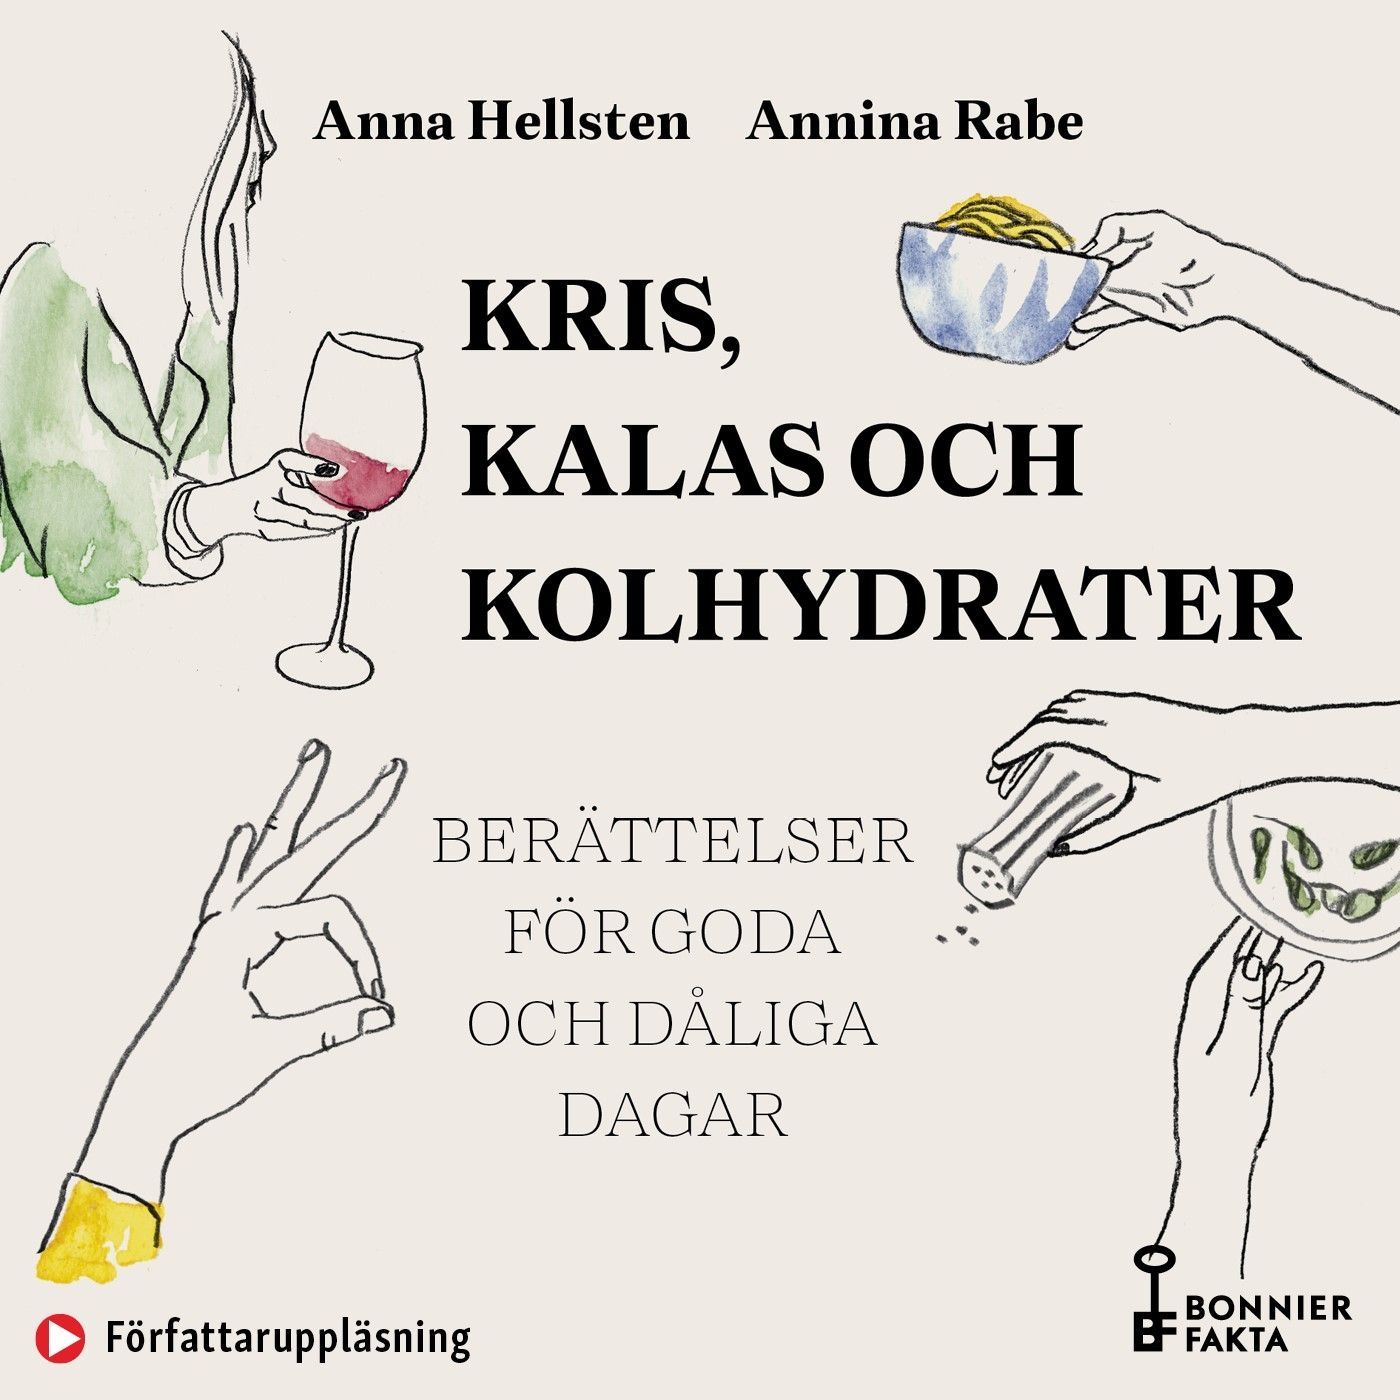 Kris, kalas och kolhydrater : Recept och berättelser för goda och dåliga dagar, audiobook by Anna Hellsten, Annina Rabe